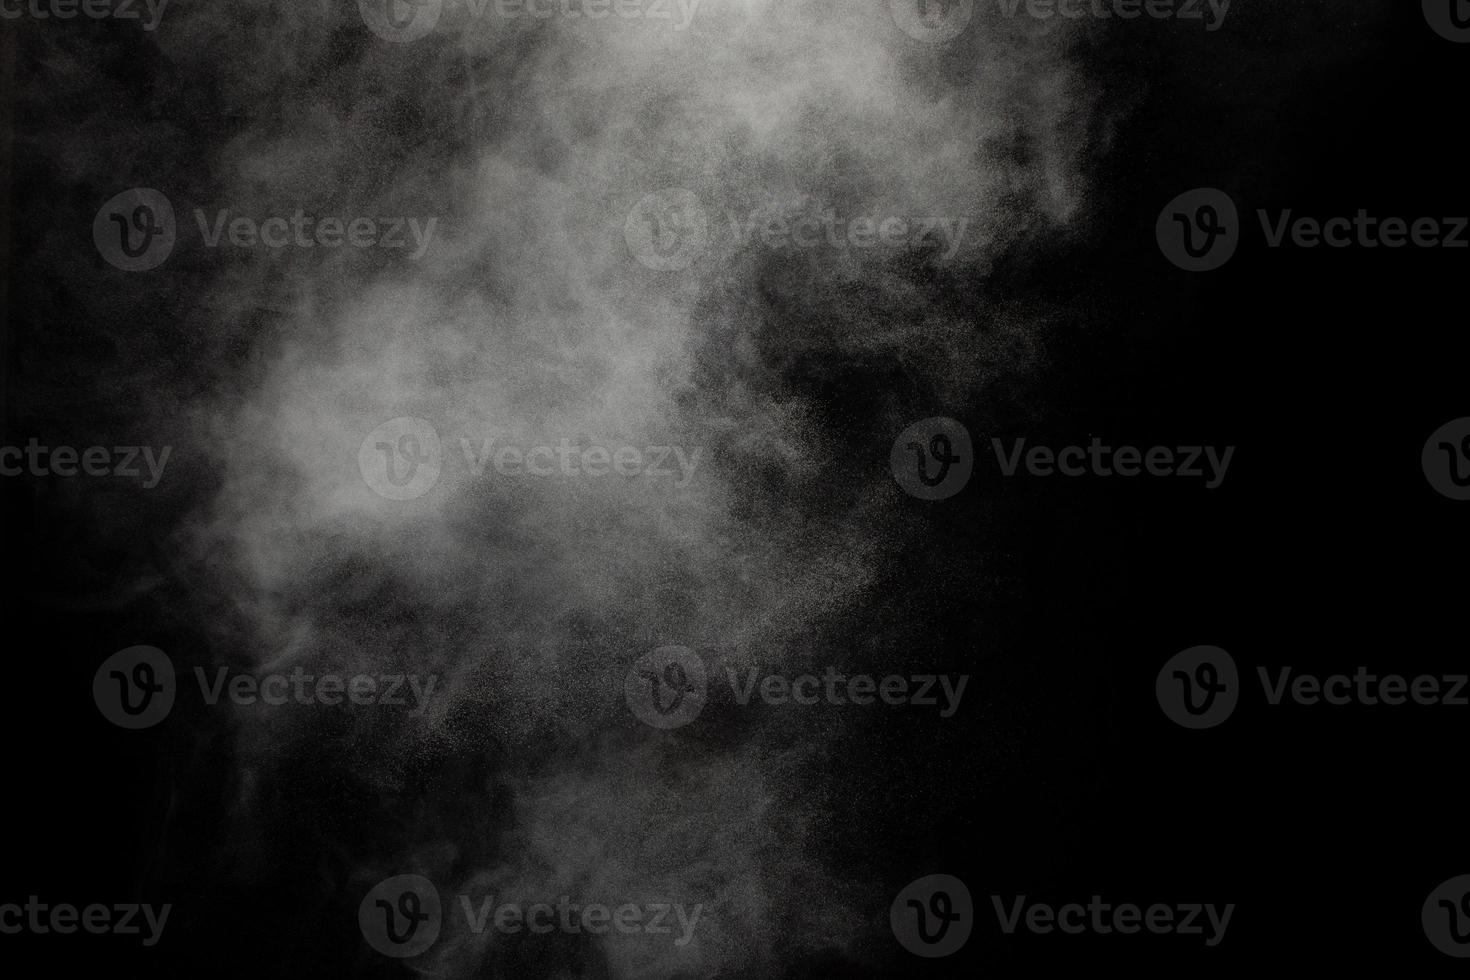 nube de explosión de polvo blanco sobre fondo negro. salpicaduras de partículas de polvo blanco. foto